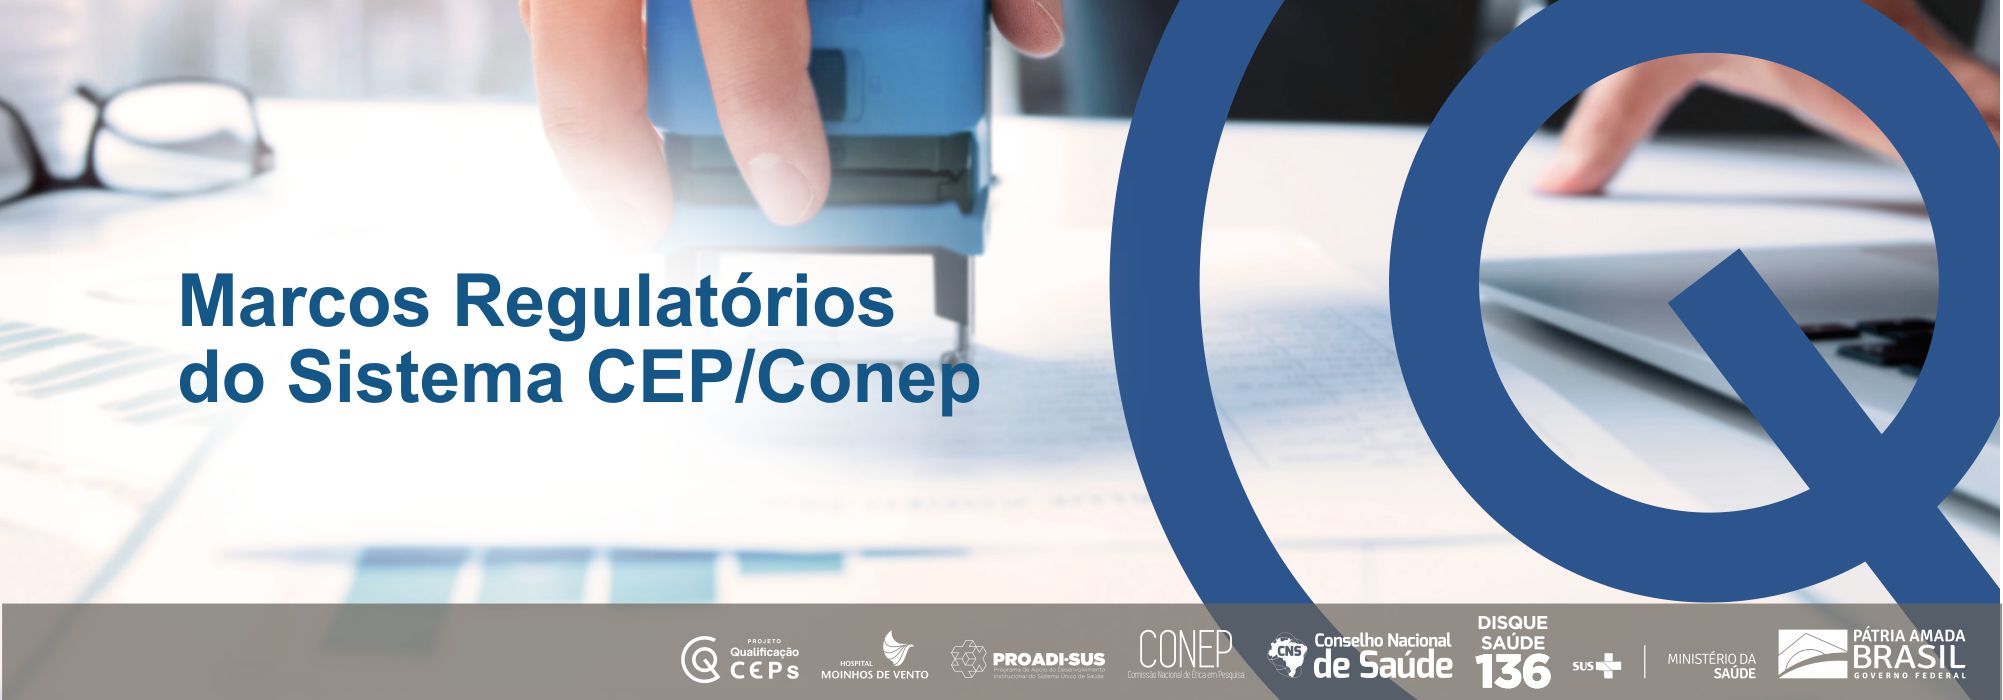 Marcos regulatórios do Sistema CEP/Conep para o processo de análise ética de projetos de pesquisa MRS181